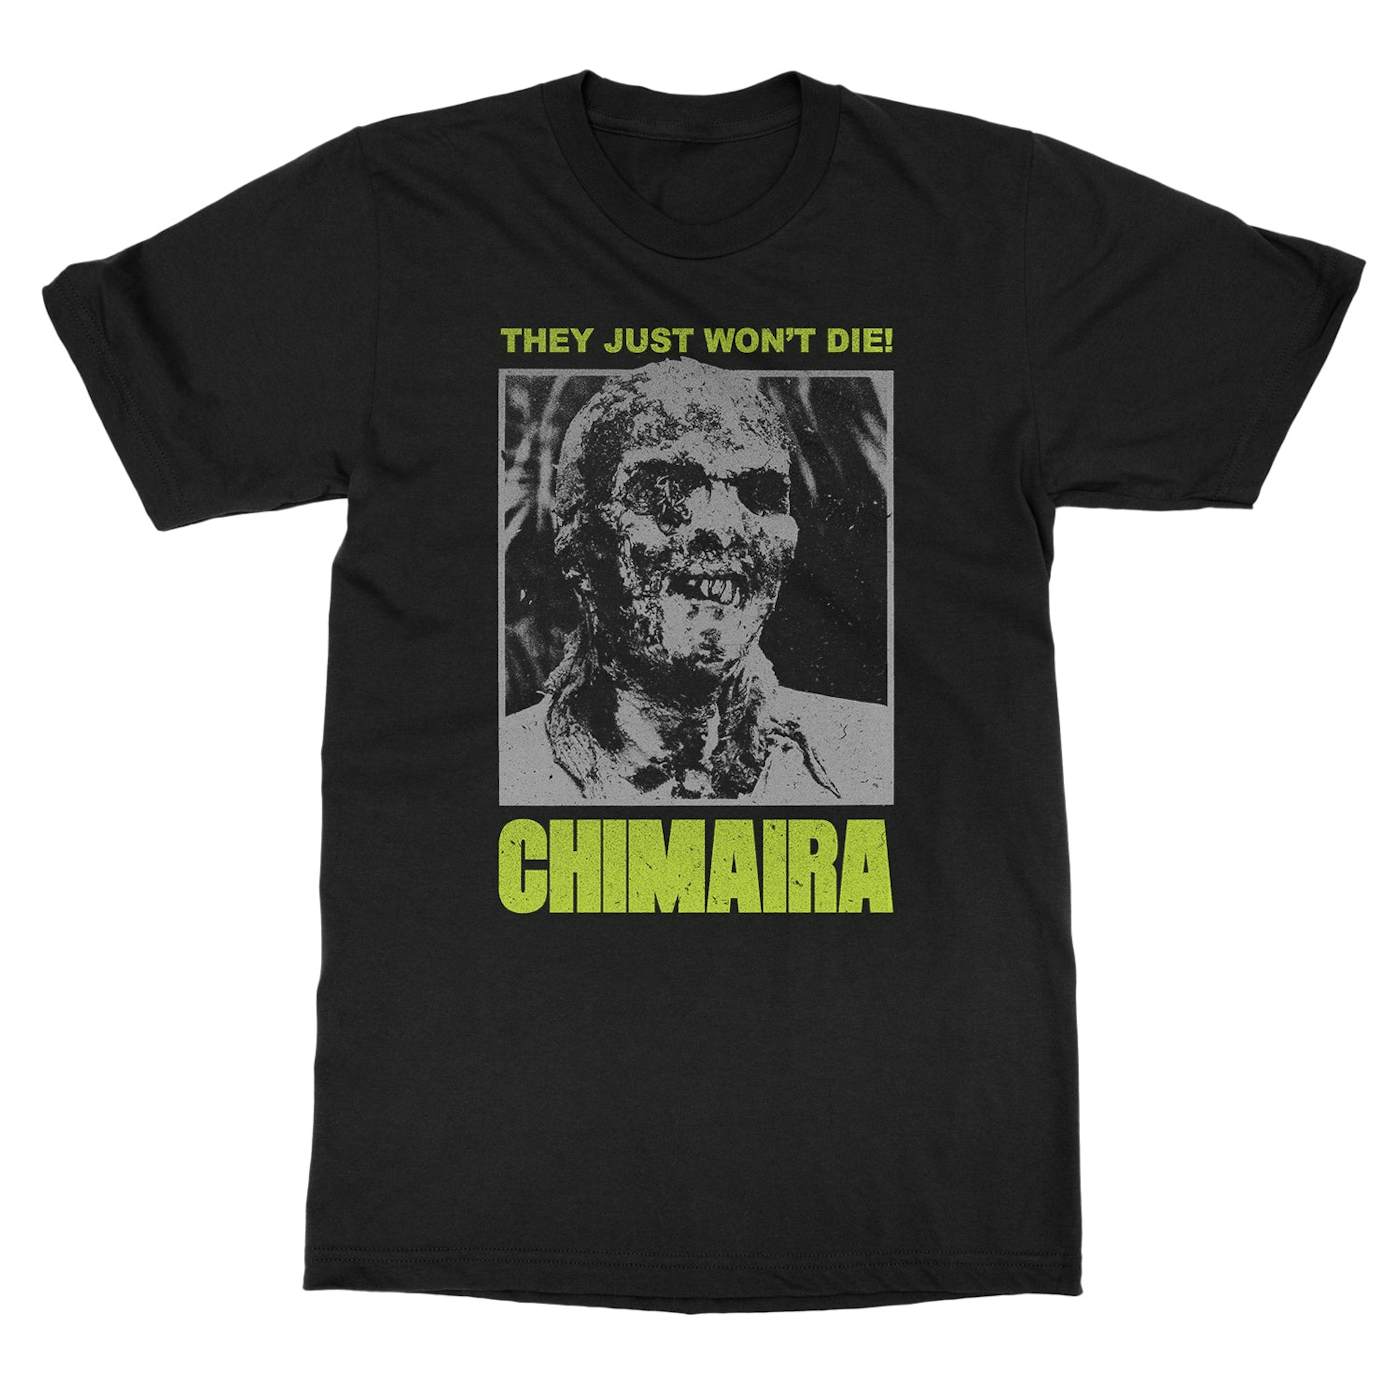 Chimaira "Zombie" T-Shirt